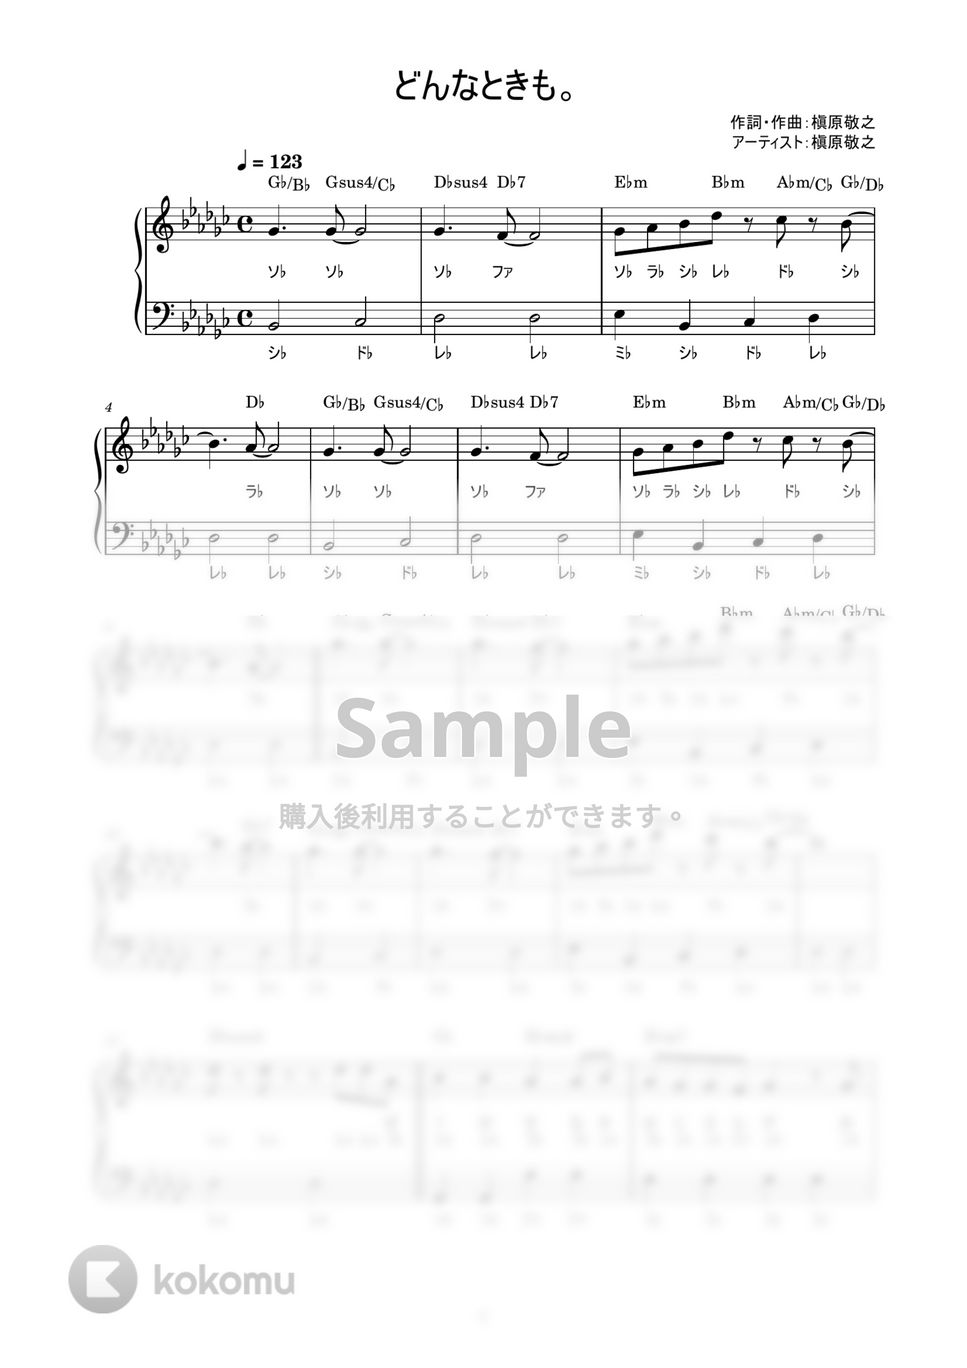 槇原敬之 - どんなときも。 (かんたん / 歌詞付き / ドレミ付き / 初心者) by piano.tokyo